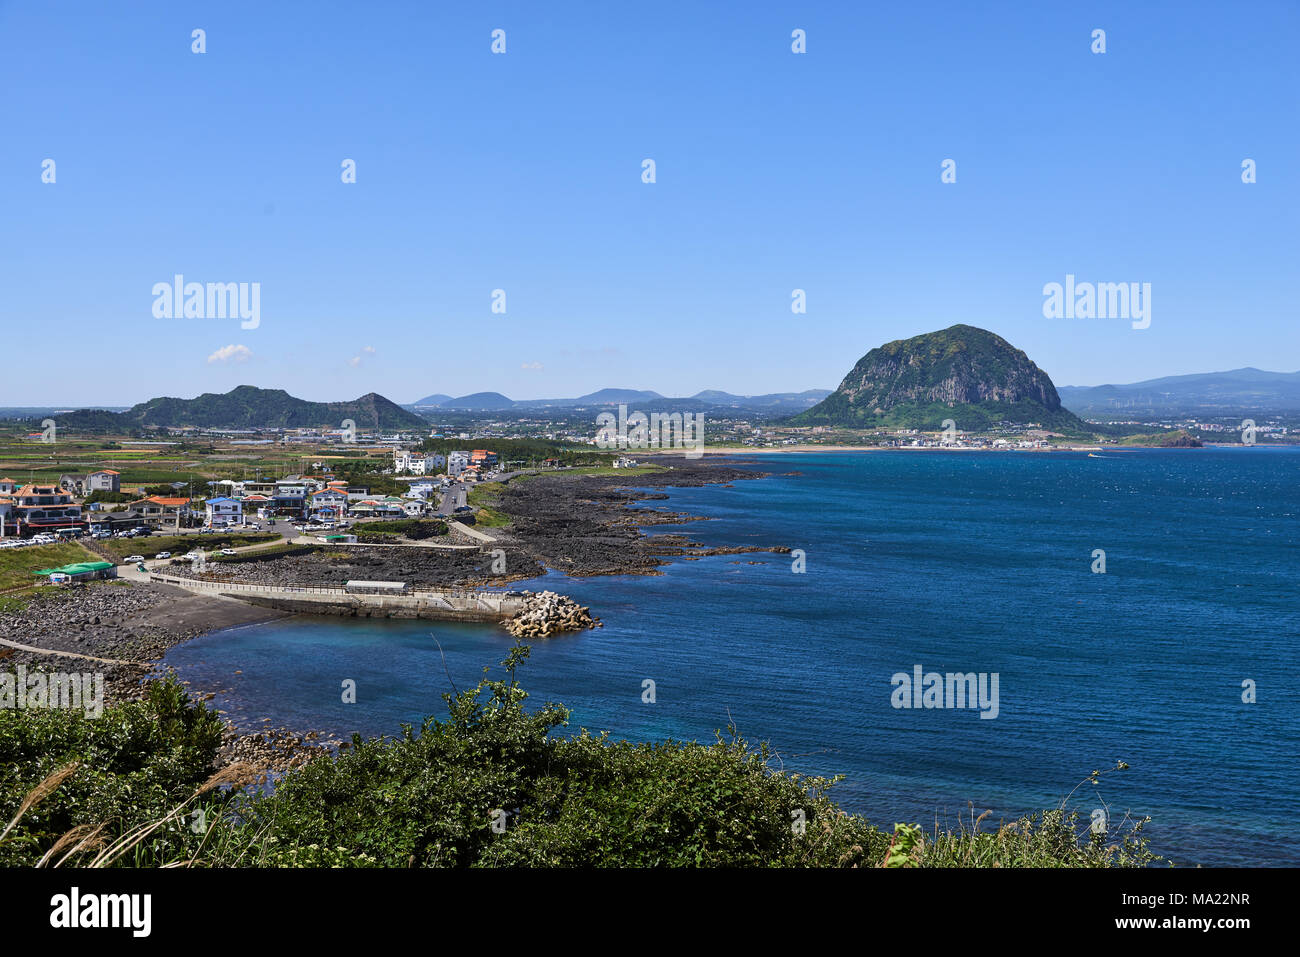 Paesaggio di Sagye-ri village e la costa sud-occidentale dell'Isola di Jeju con Sanbangsan Hallasan e montagna, visto da Olle sentiero no.10 a Songaksan. Foto Stock